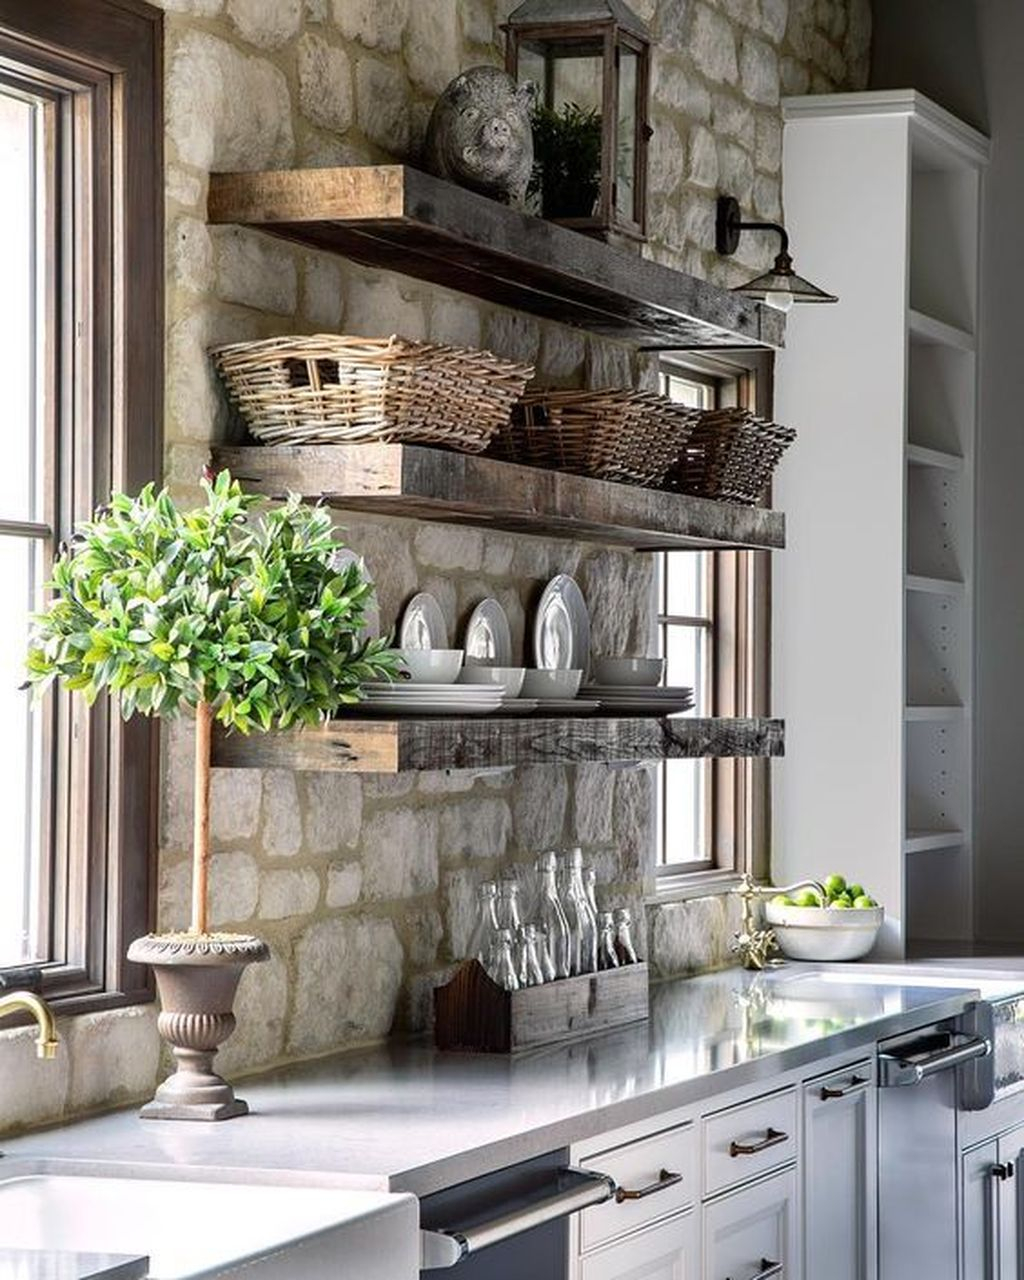 Wonderful Industrial Kitchen Shelf Design Ideas To Organize Your Kitchen37